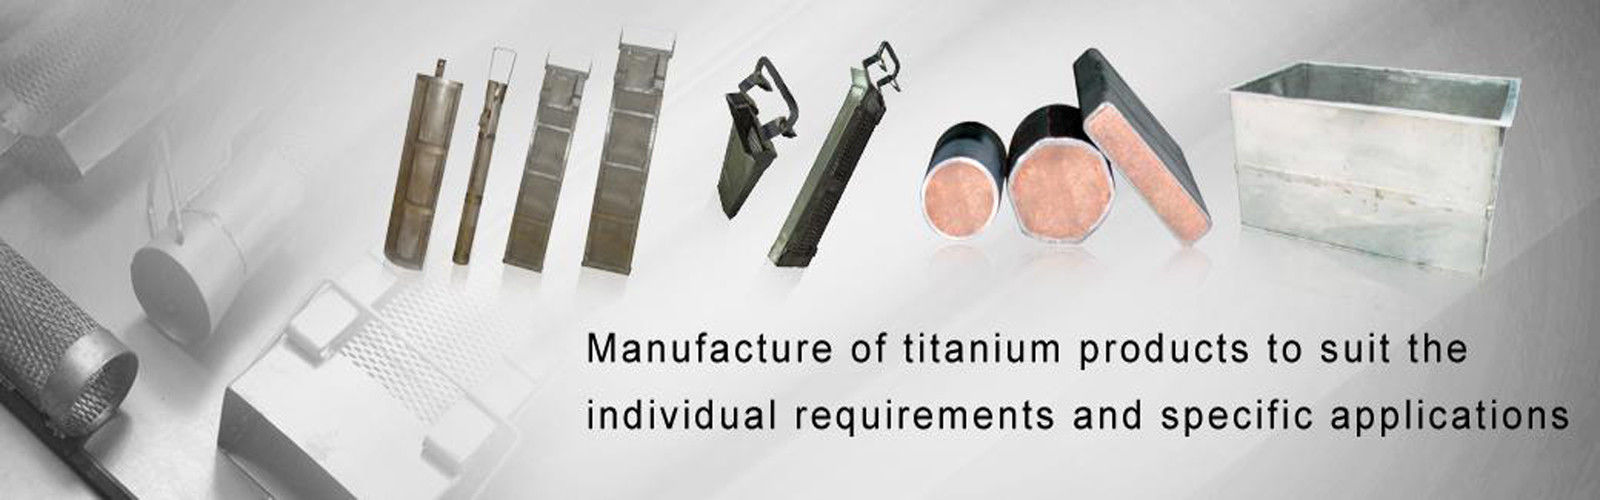 Titanium Immersion Heater